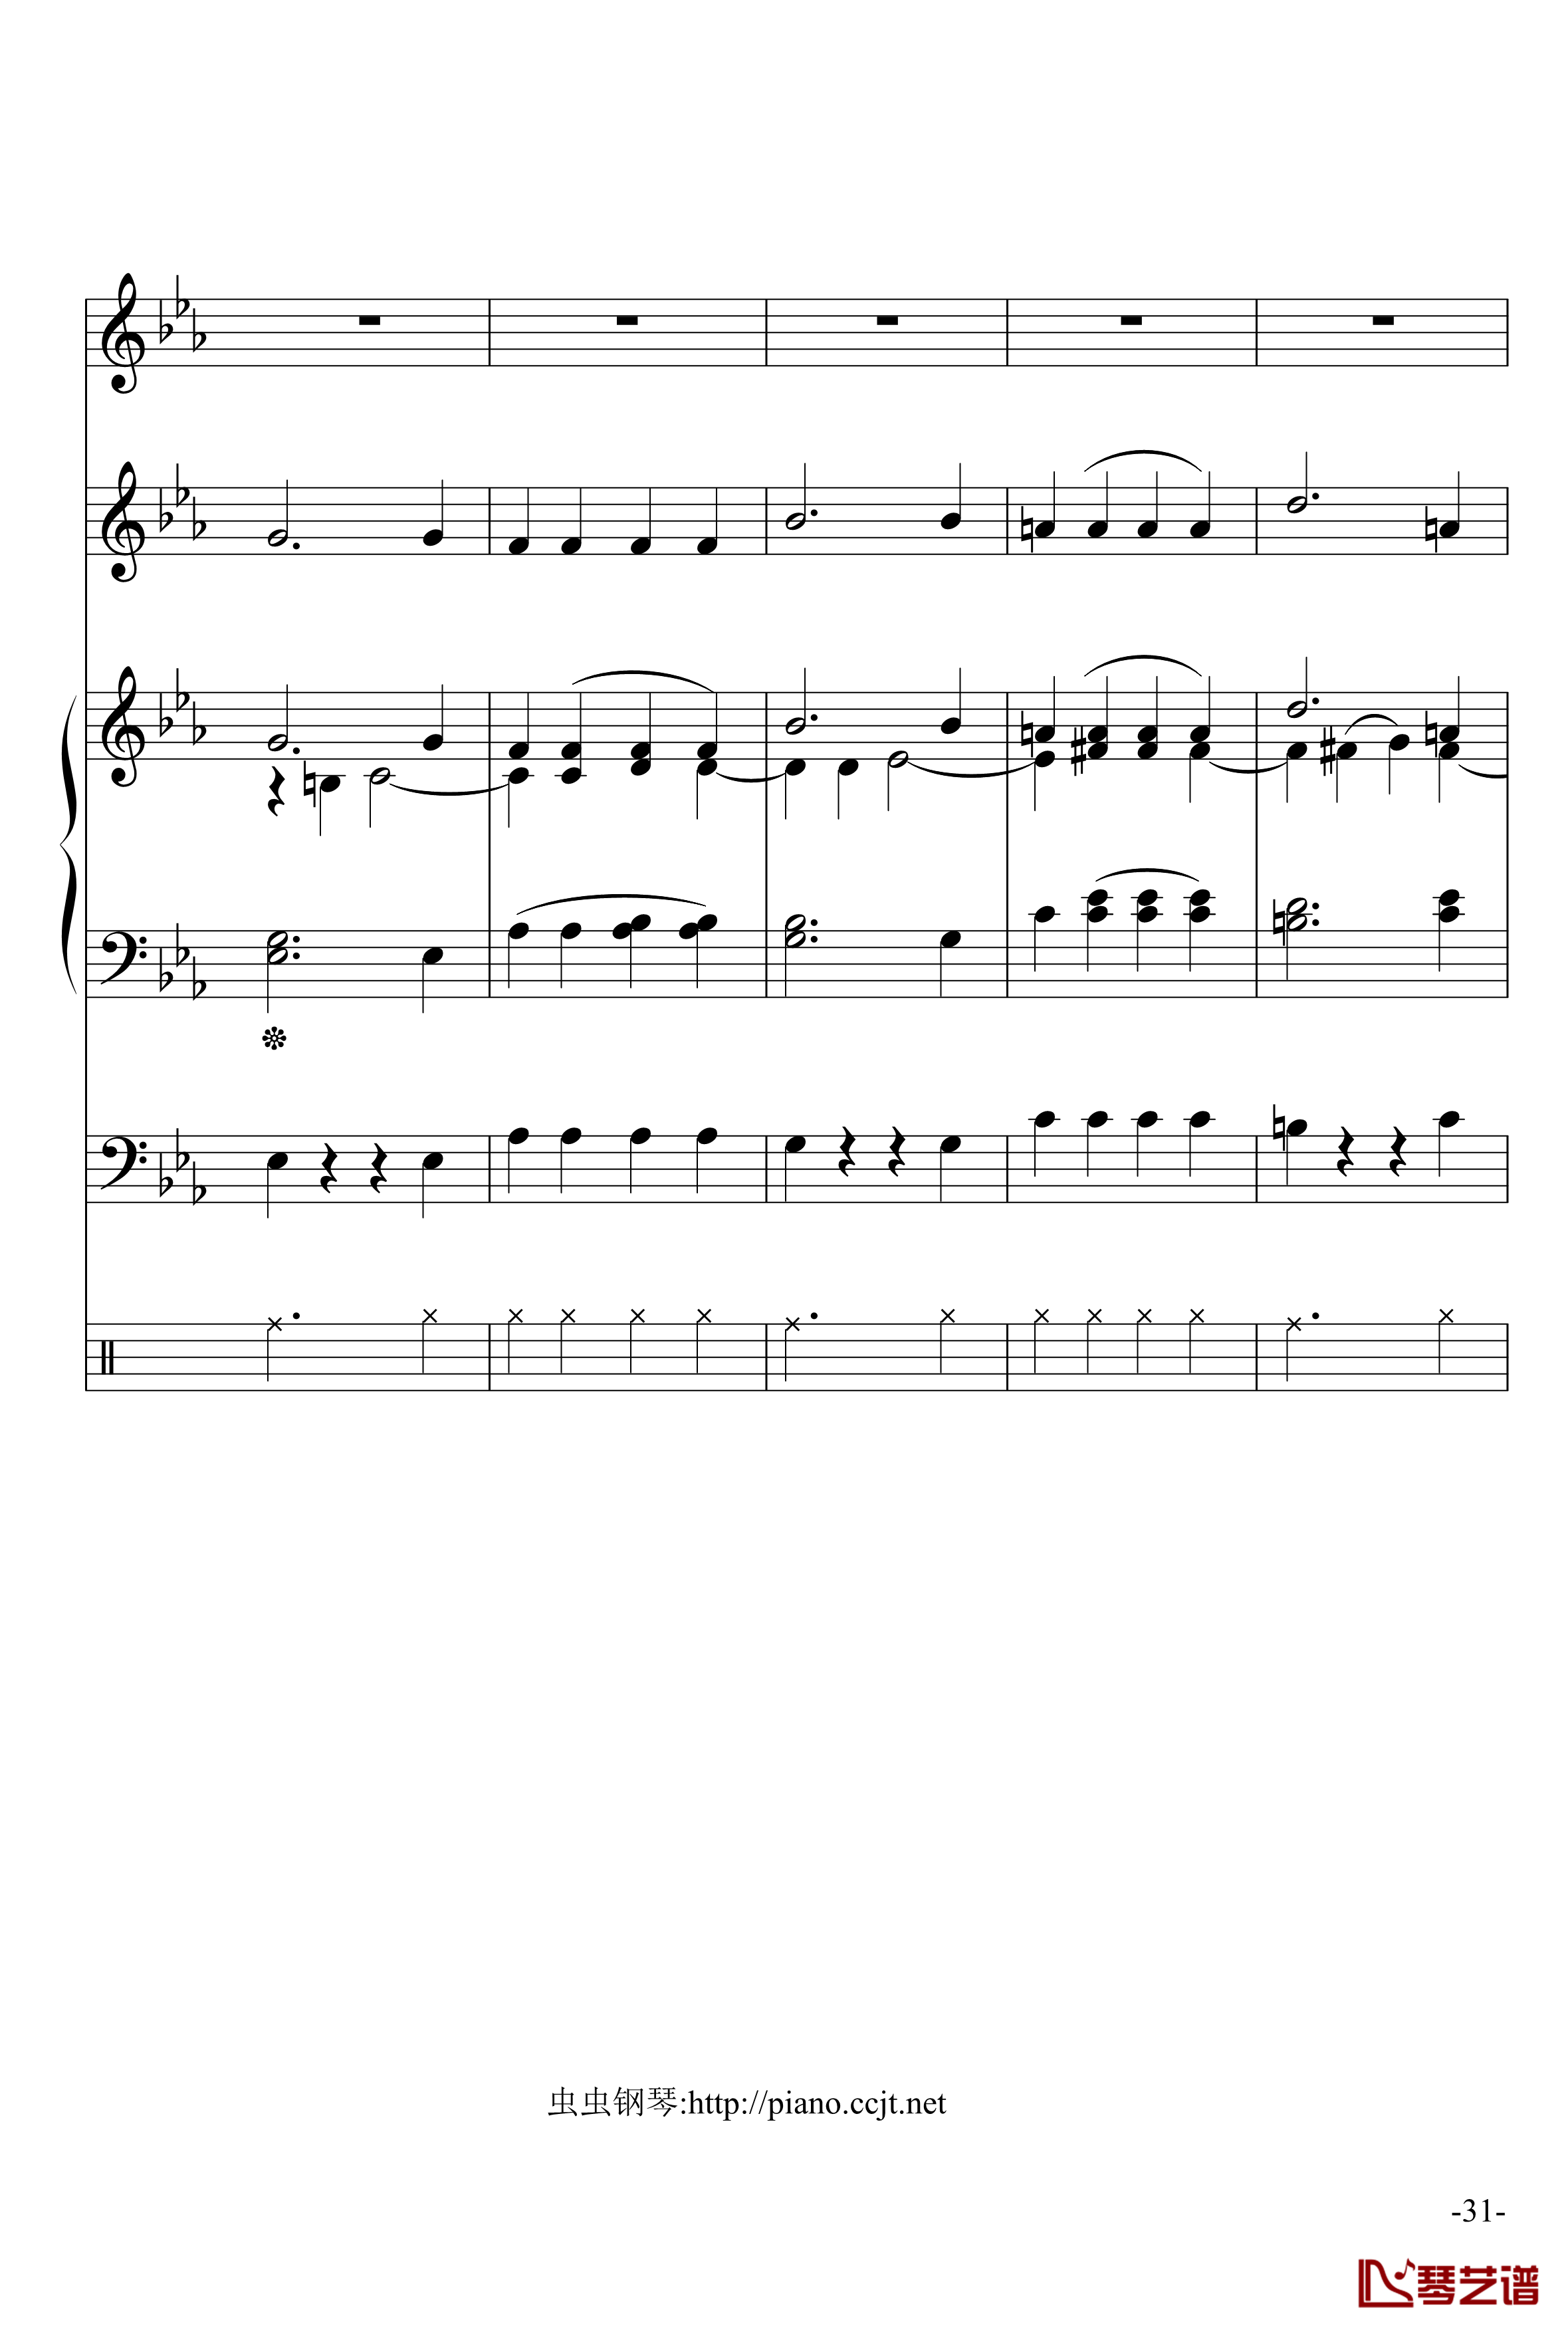 悲怆奏鸣曲钢琴谱-加小乐队-贝多芬-beethoven31